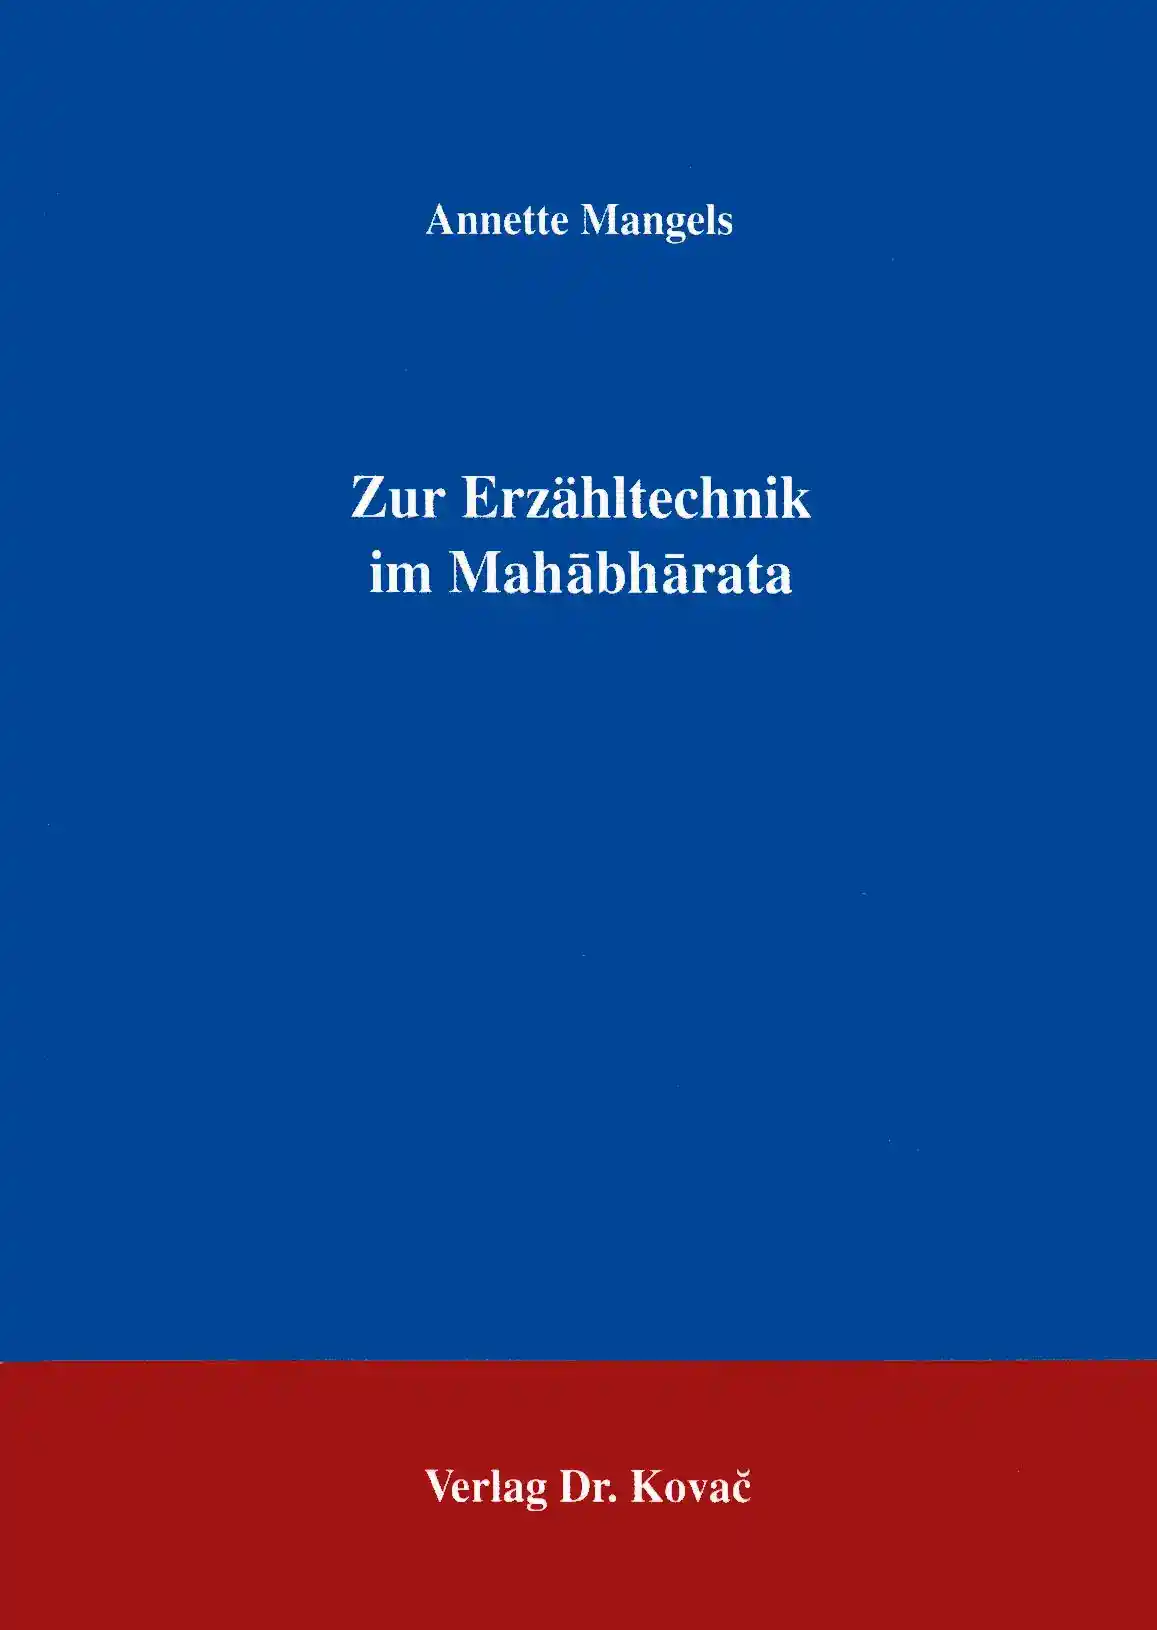 Zur Erzähltechnik im Mahabharata (Forschungsarbeit)